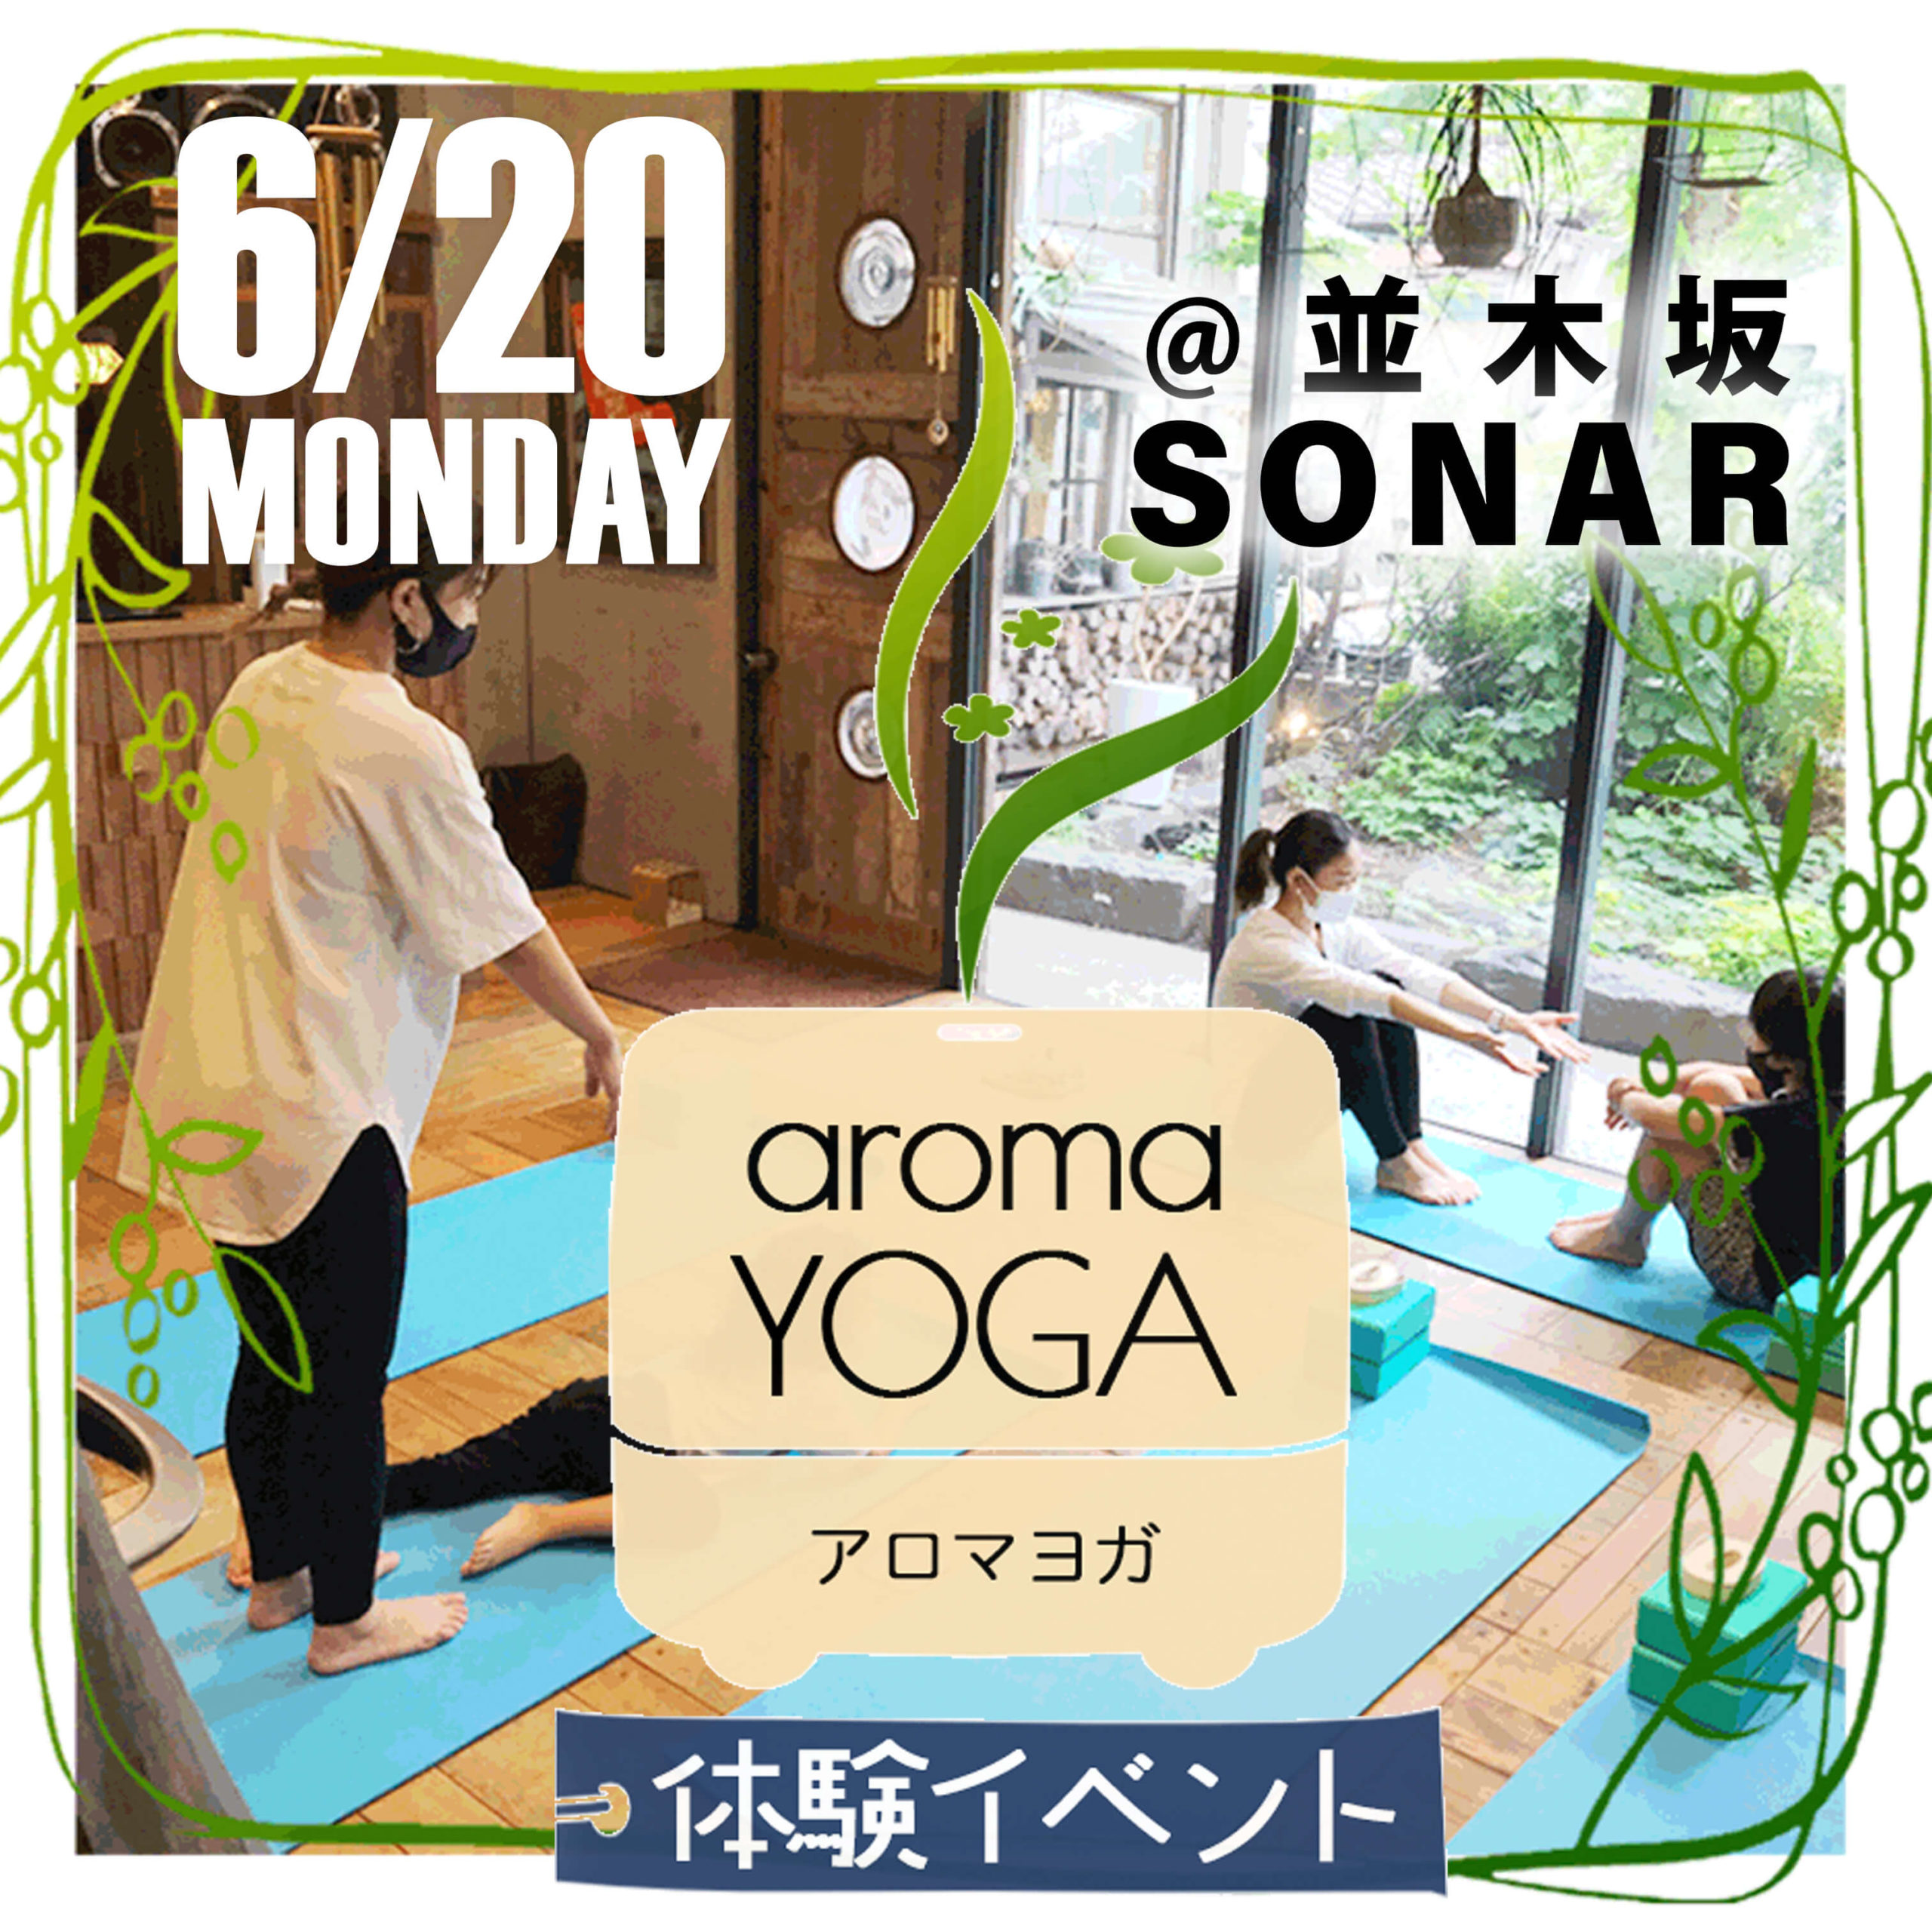 2022年6月20日(月)並木坂の美容室「SONAR」にてアロマ・ヨガの体験イベントを開催